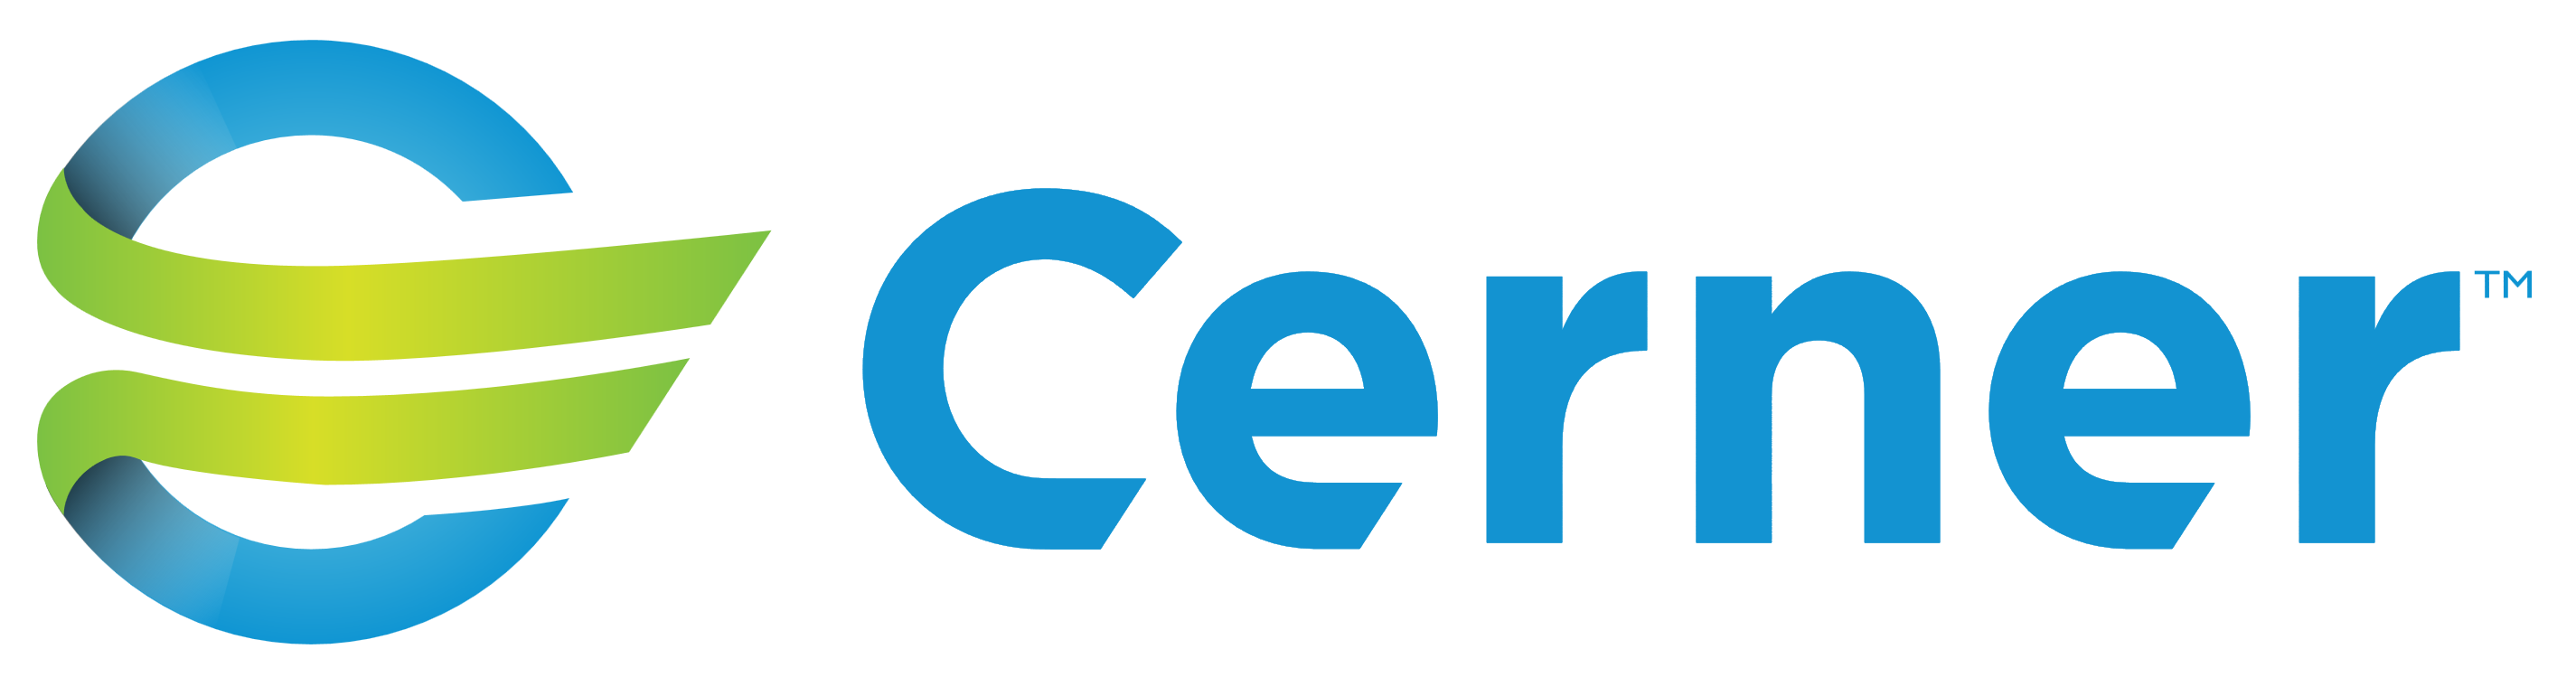 Cerner Corporation – Logos Download